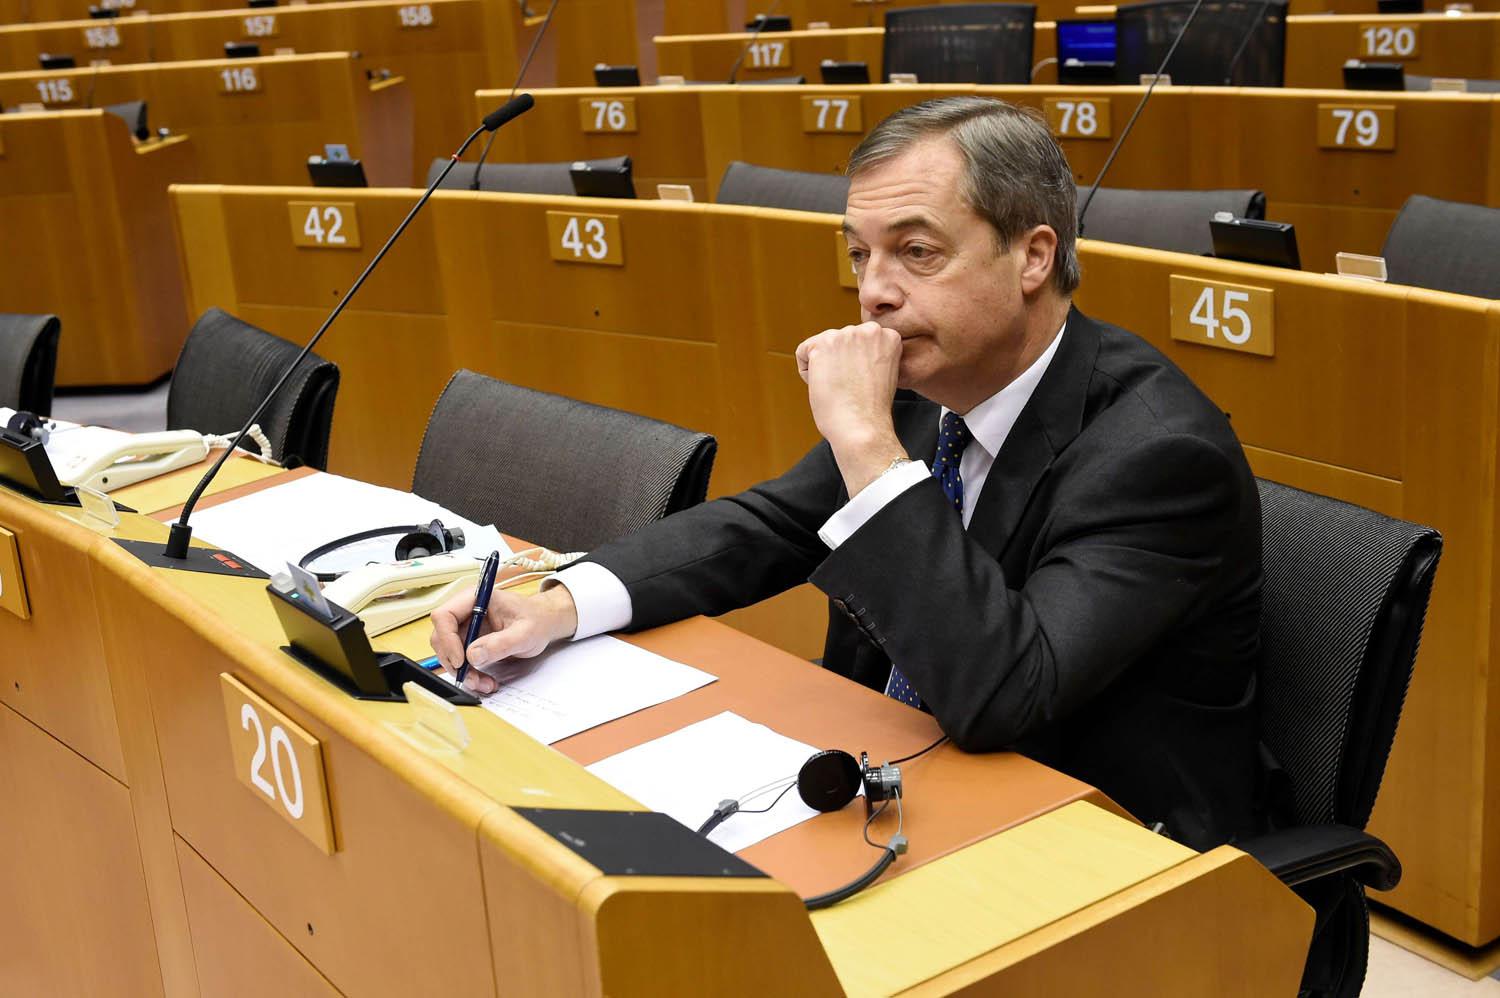 نايجل فاراج أكبر الداعين إلى الانفصال عن أوروبا على مقعده في البرلمان الأوروبي